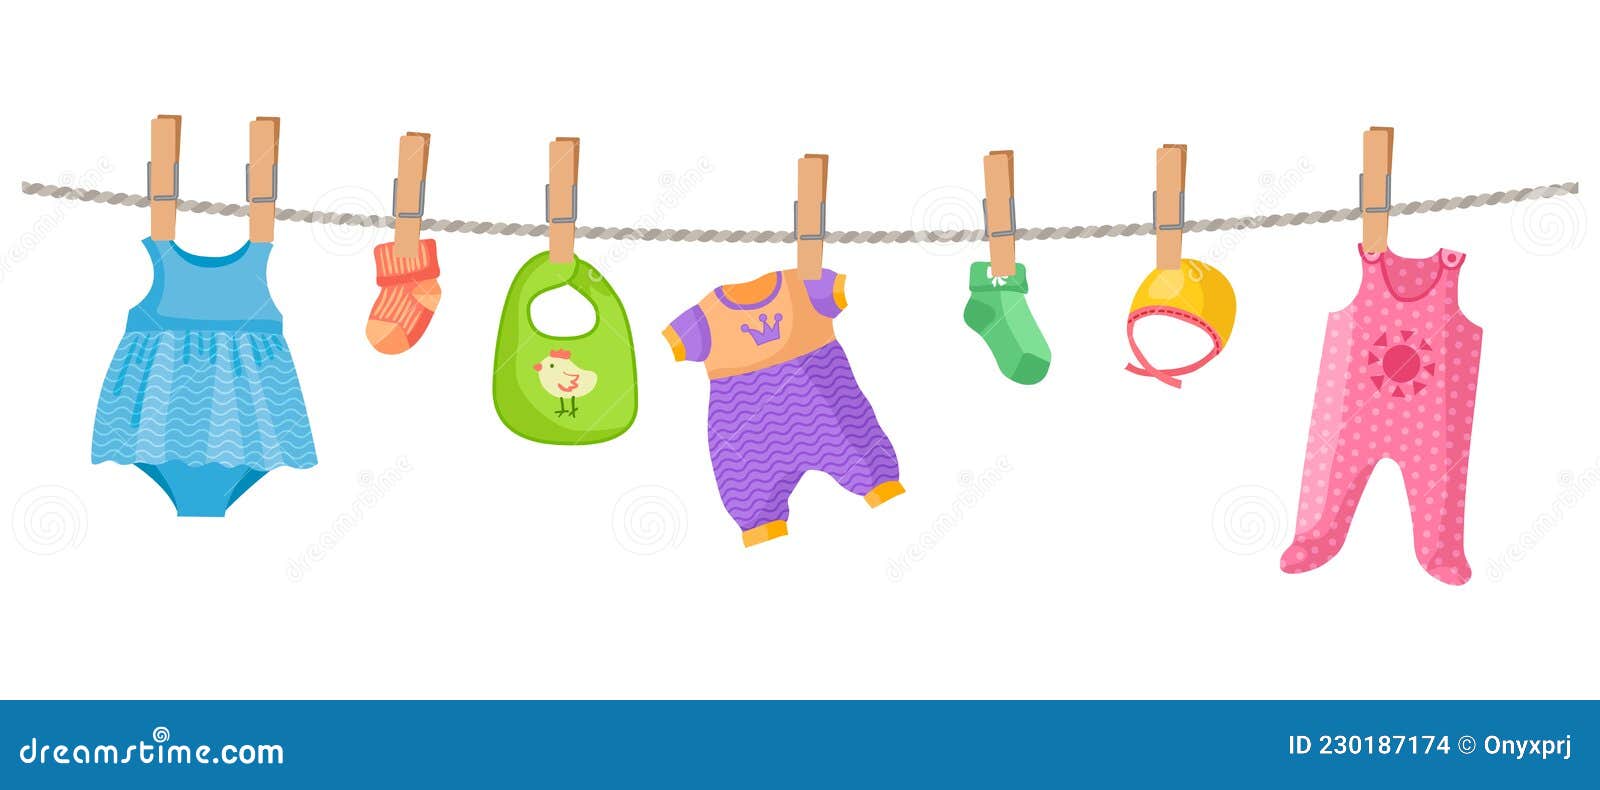 Accesorios y ropa para niños